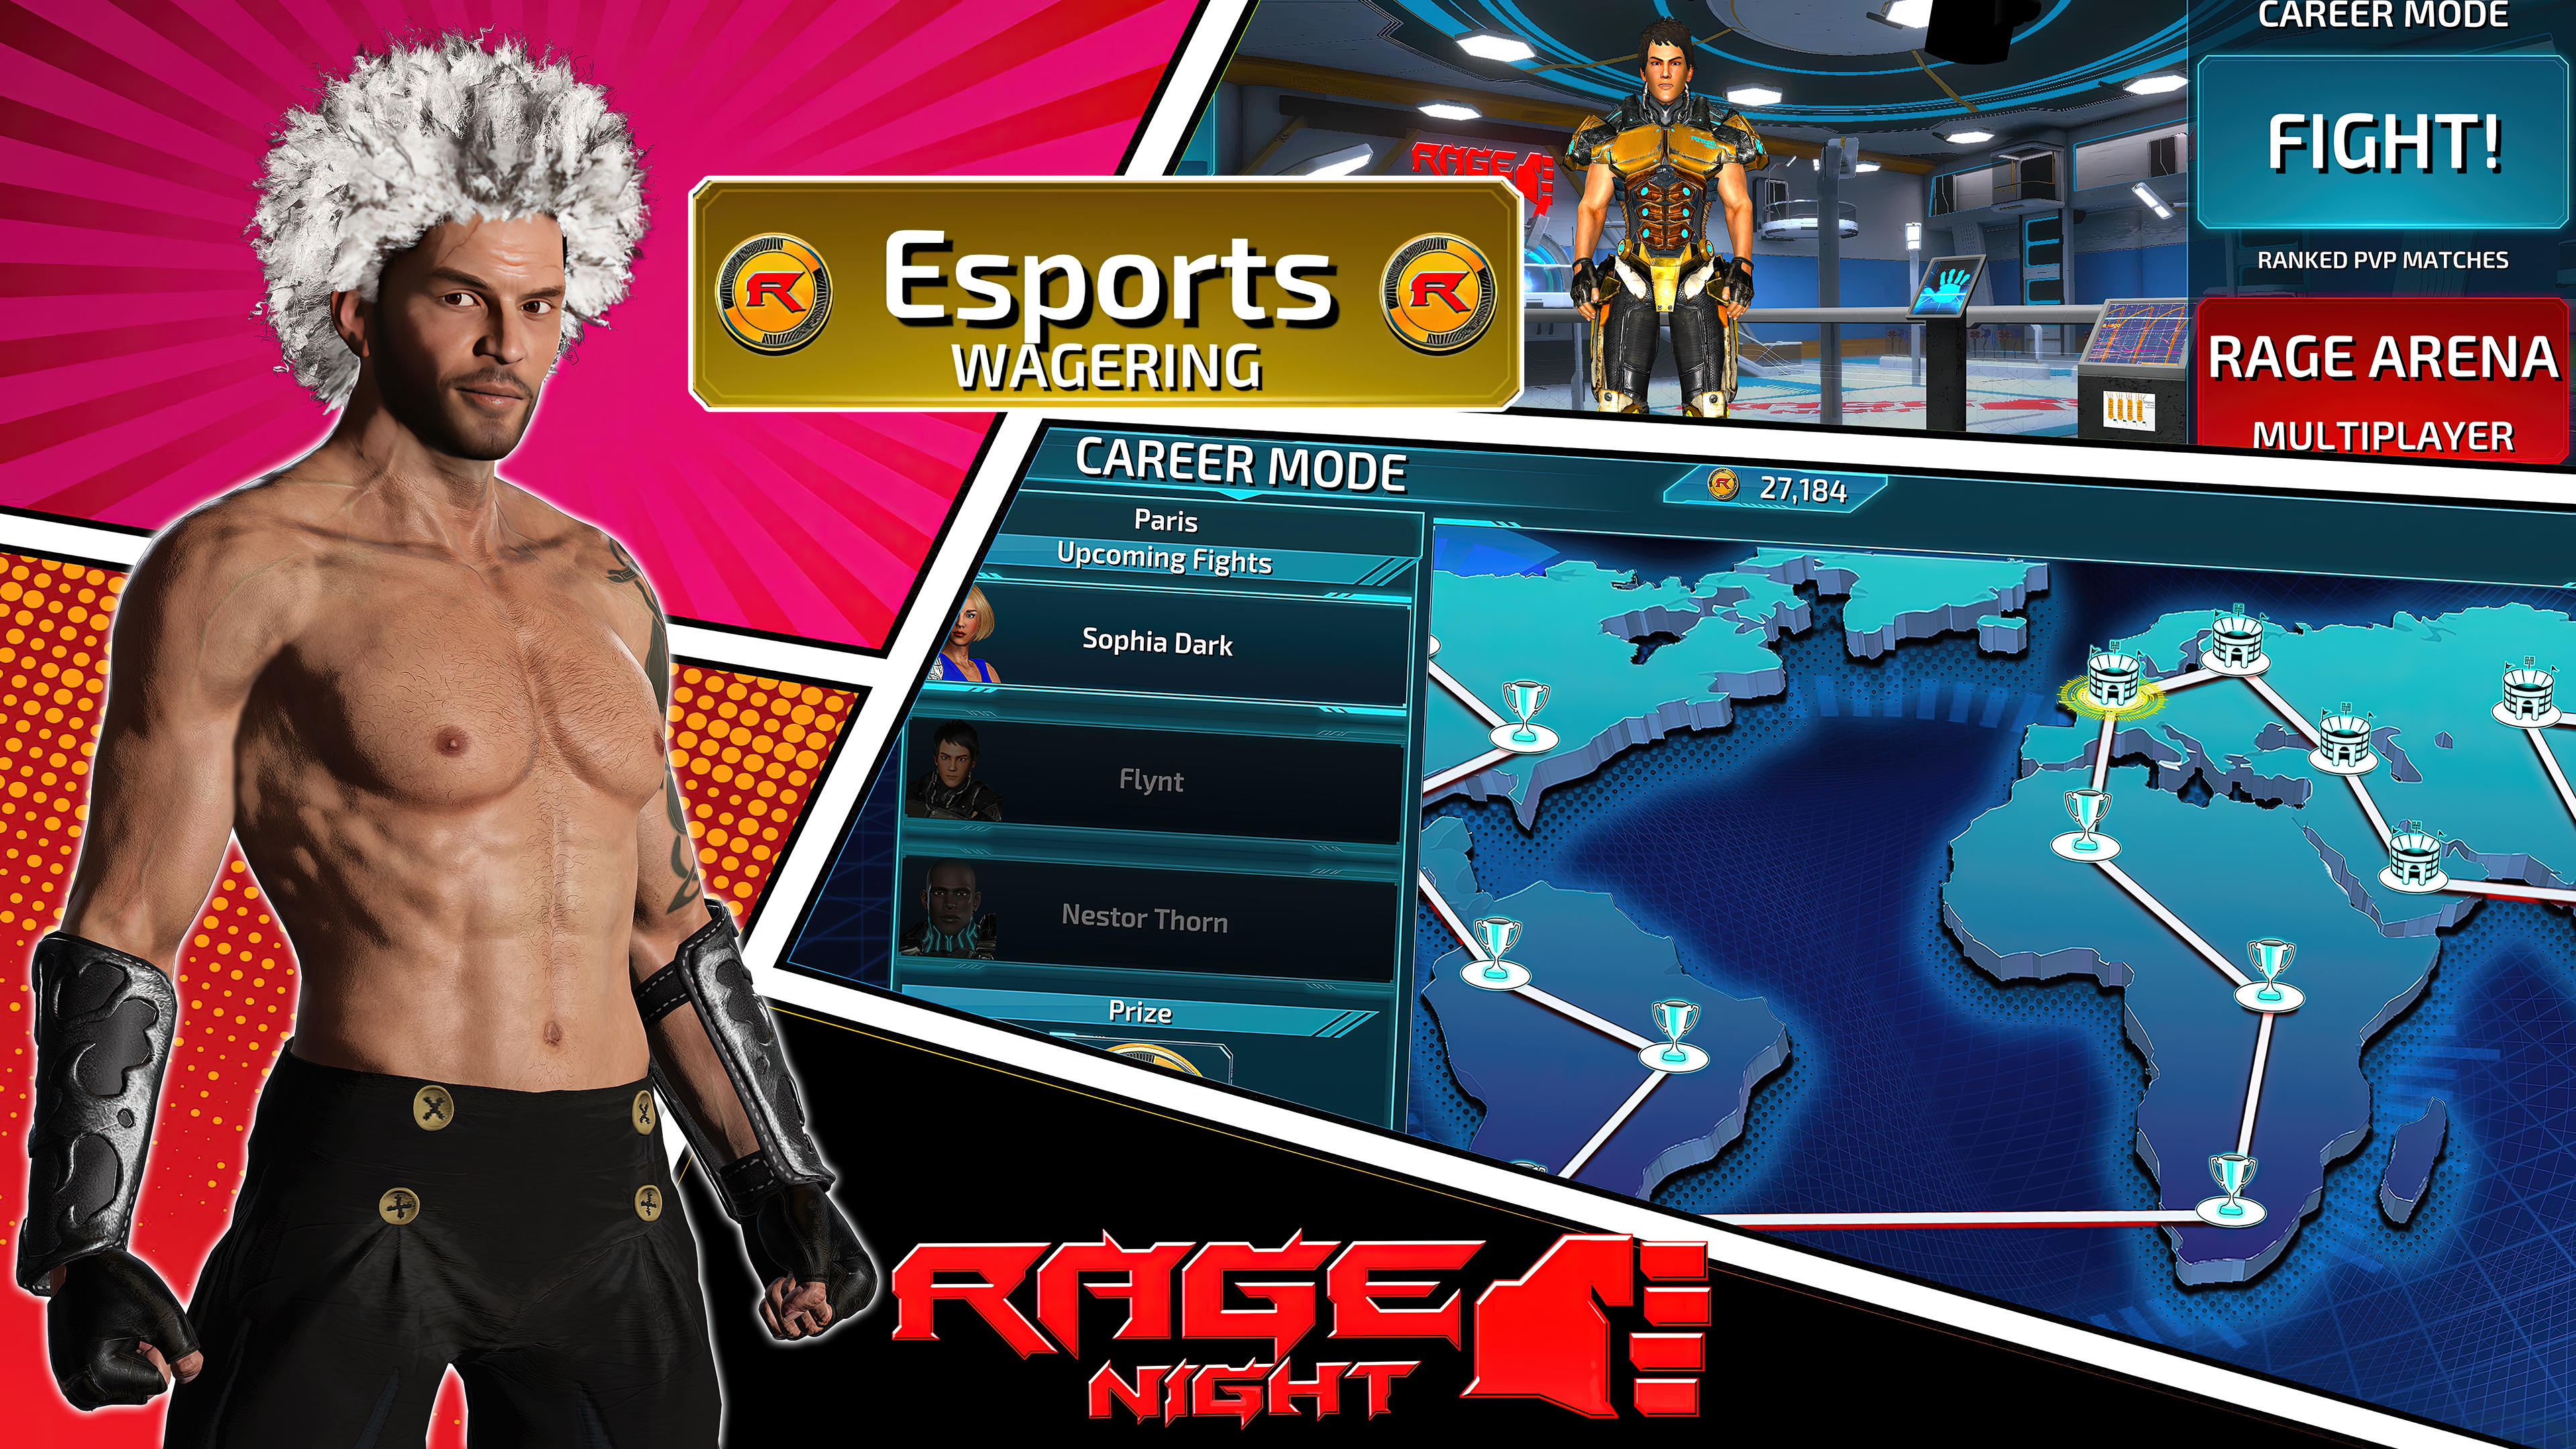 Rage Night screenshot game